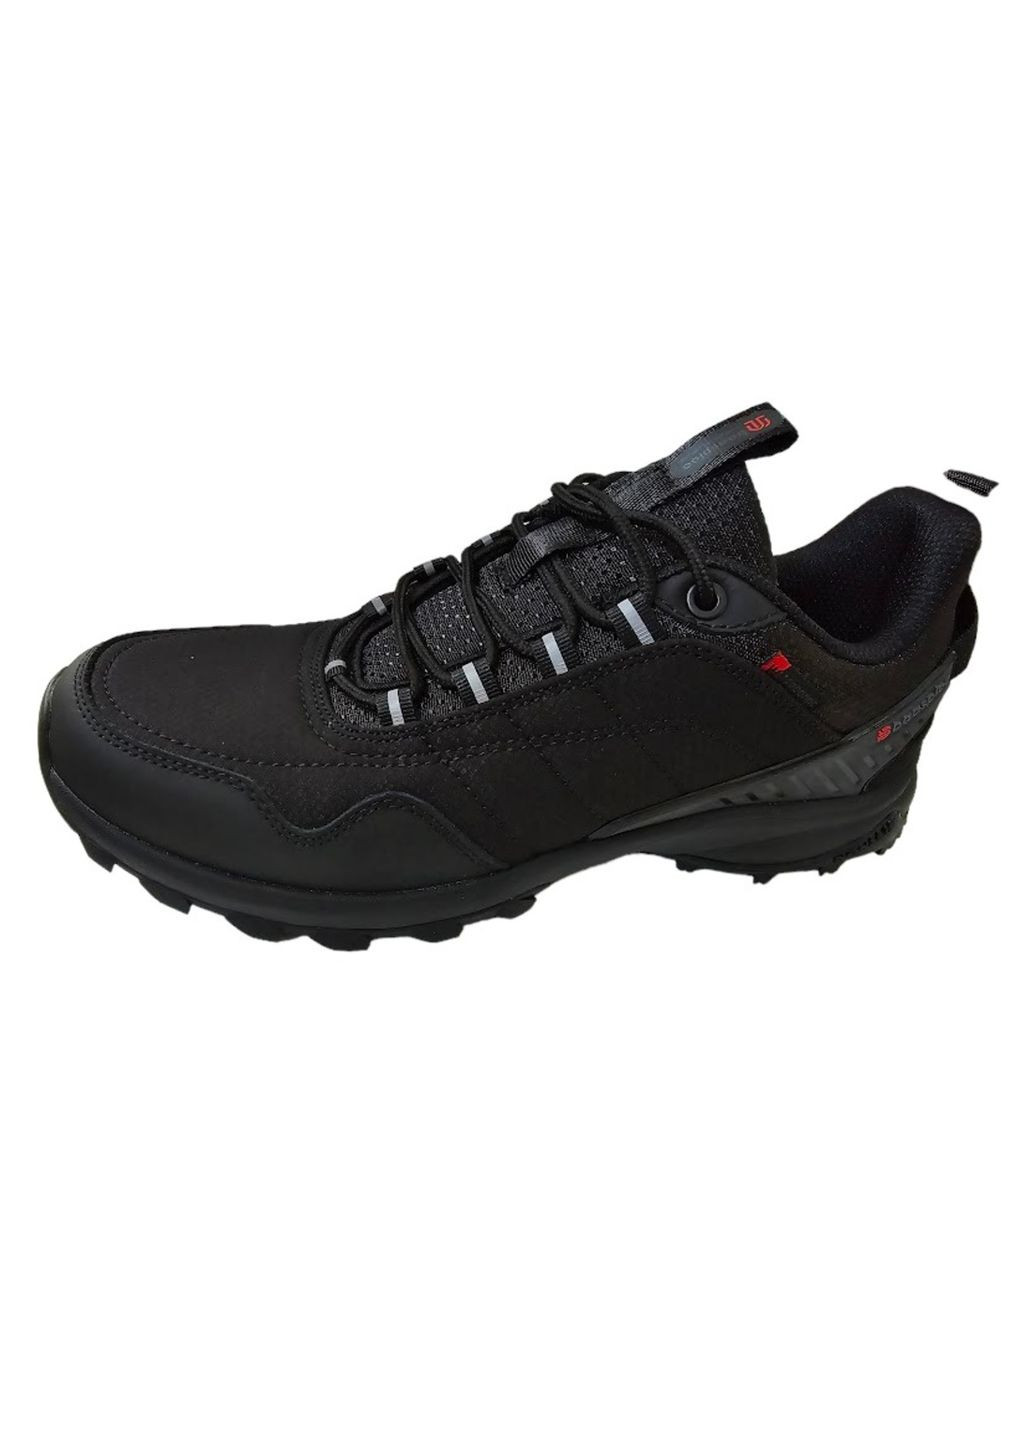 Черные демисезонные кроссовки мужские, термозащита, водозащищенные, вьетнам Baas Black Waterproof